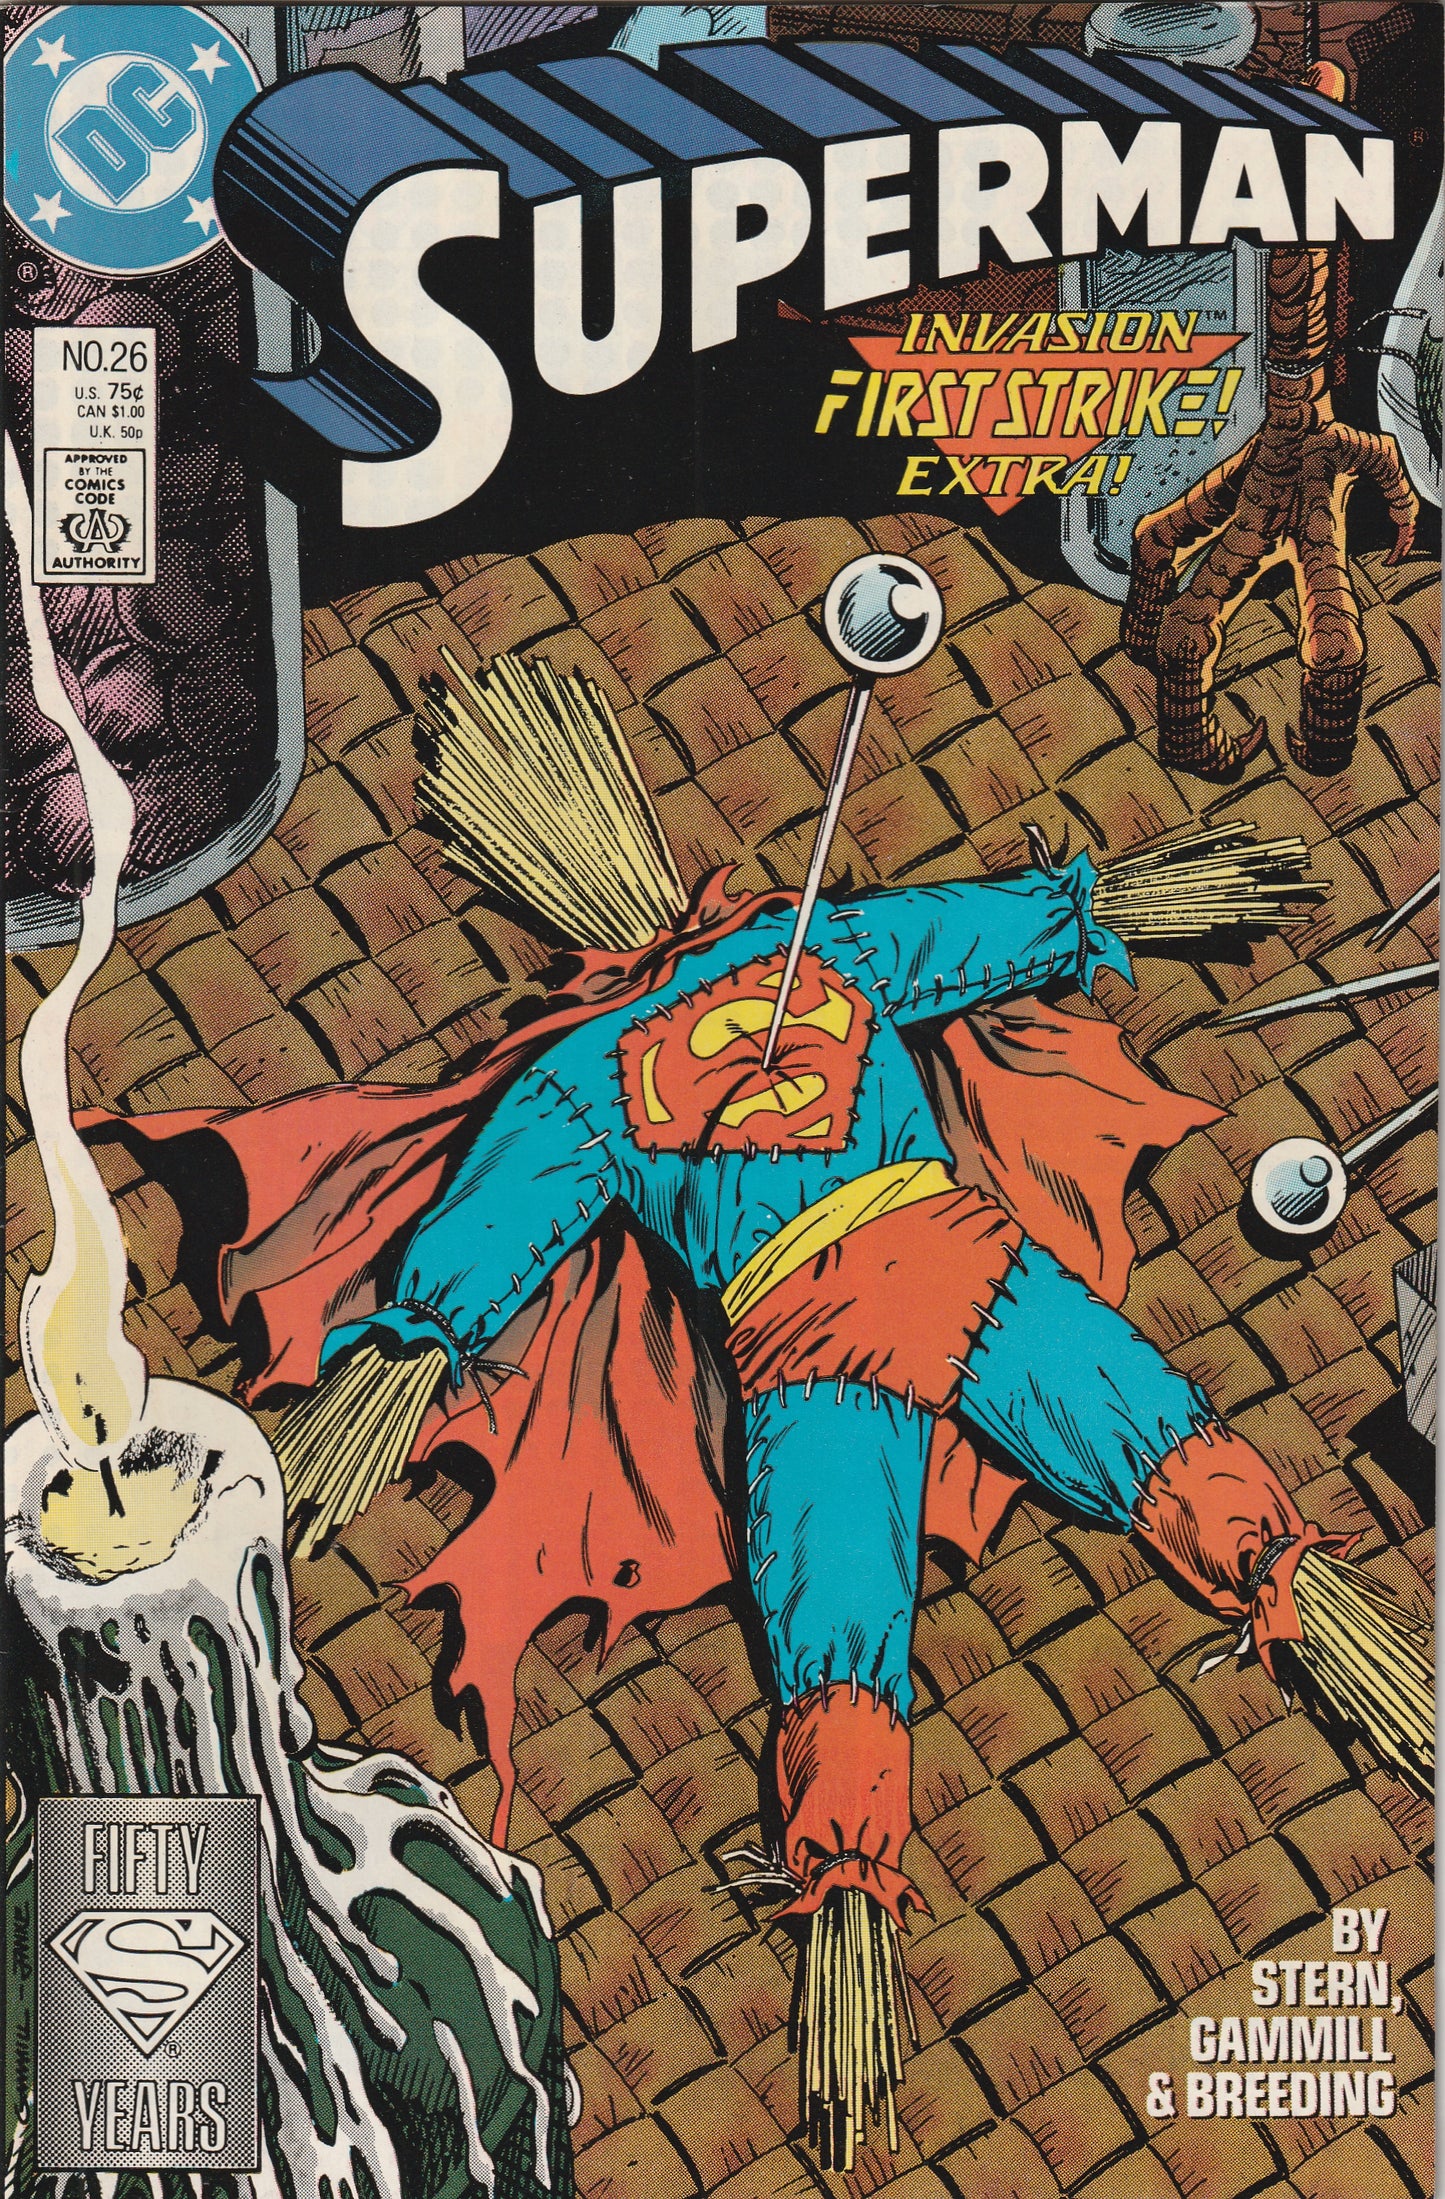 Superman #26 (Vol 2, 1988)